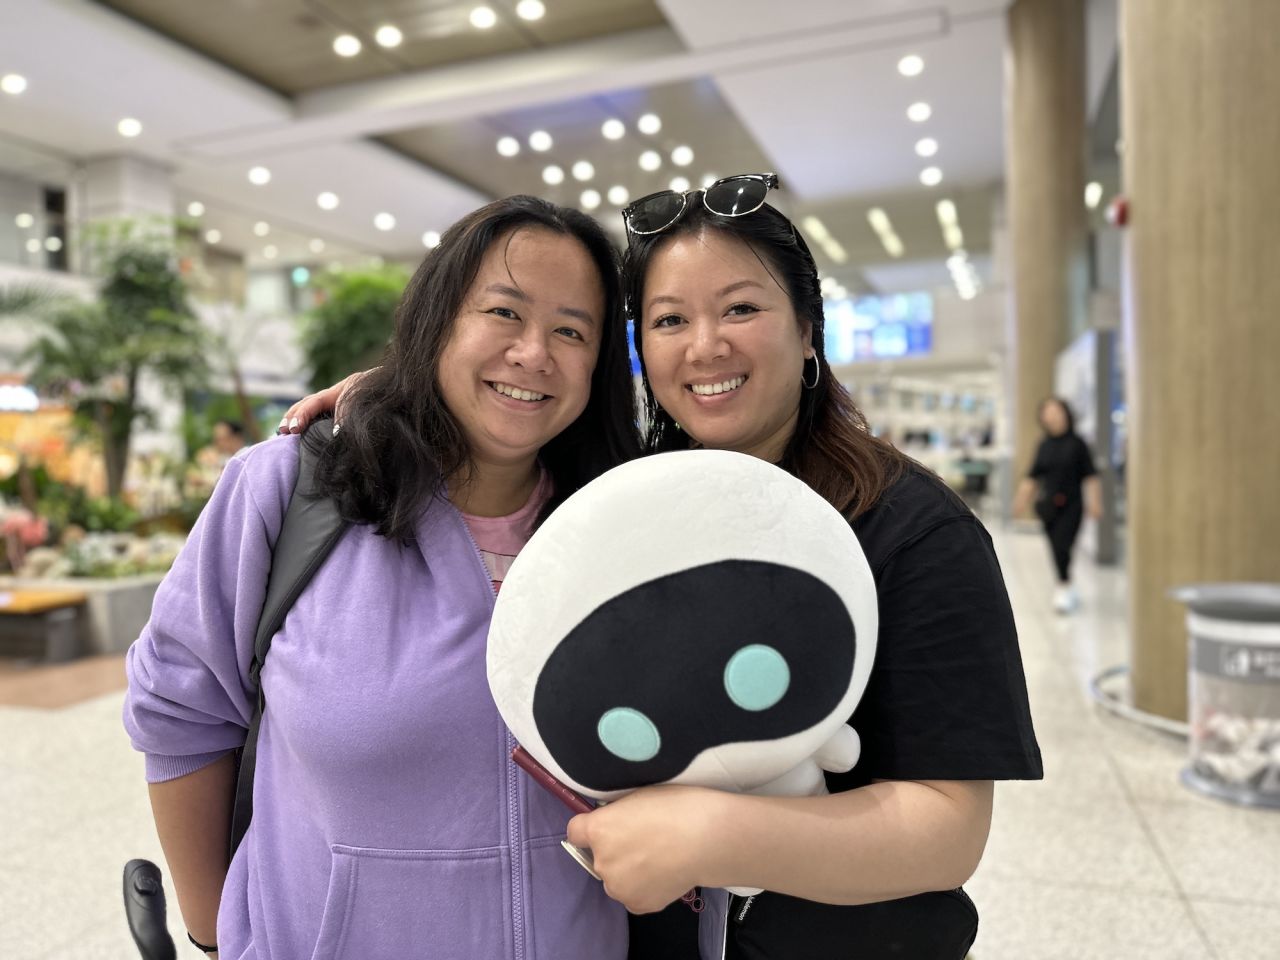 Diana Phung (izquierda) y Lisa Trinh (derecha) tardaron siete meses en planificar su visita a Corea del Sur, coincidiendo perfectamente con el décimo aniversario de BTS.